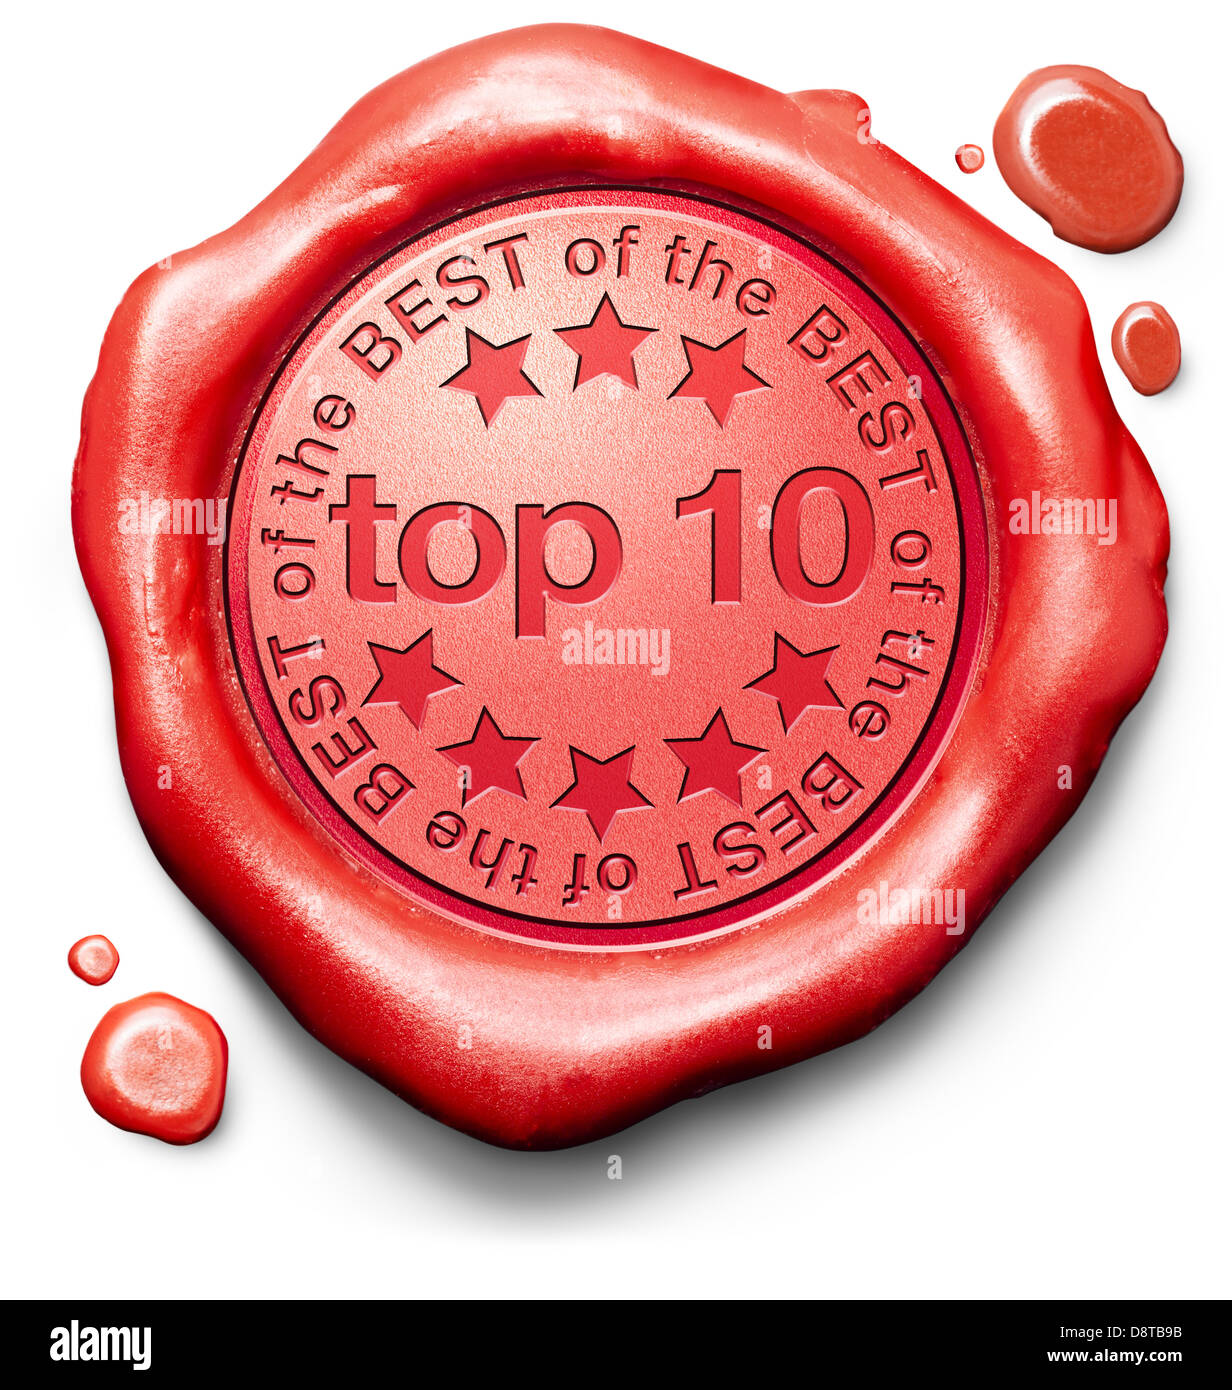 Top 10 besten Bestseller Qualität Etikett rotes Wachs Siegelstempel oder Abzeichen Stockfoto